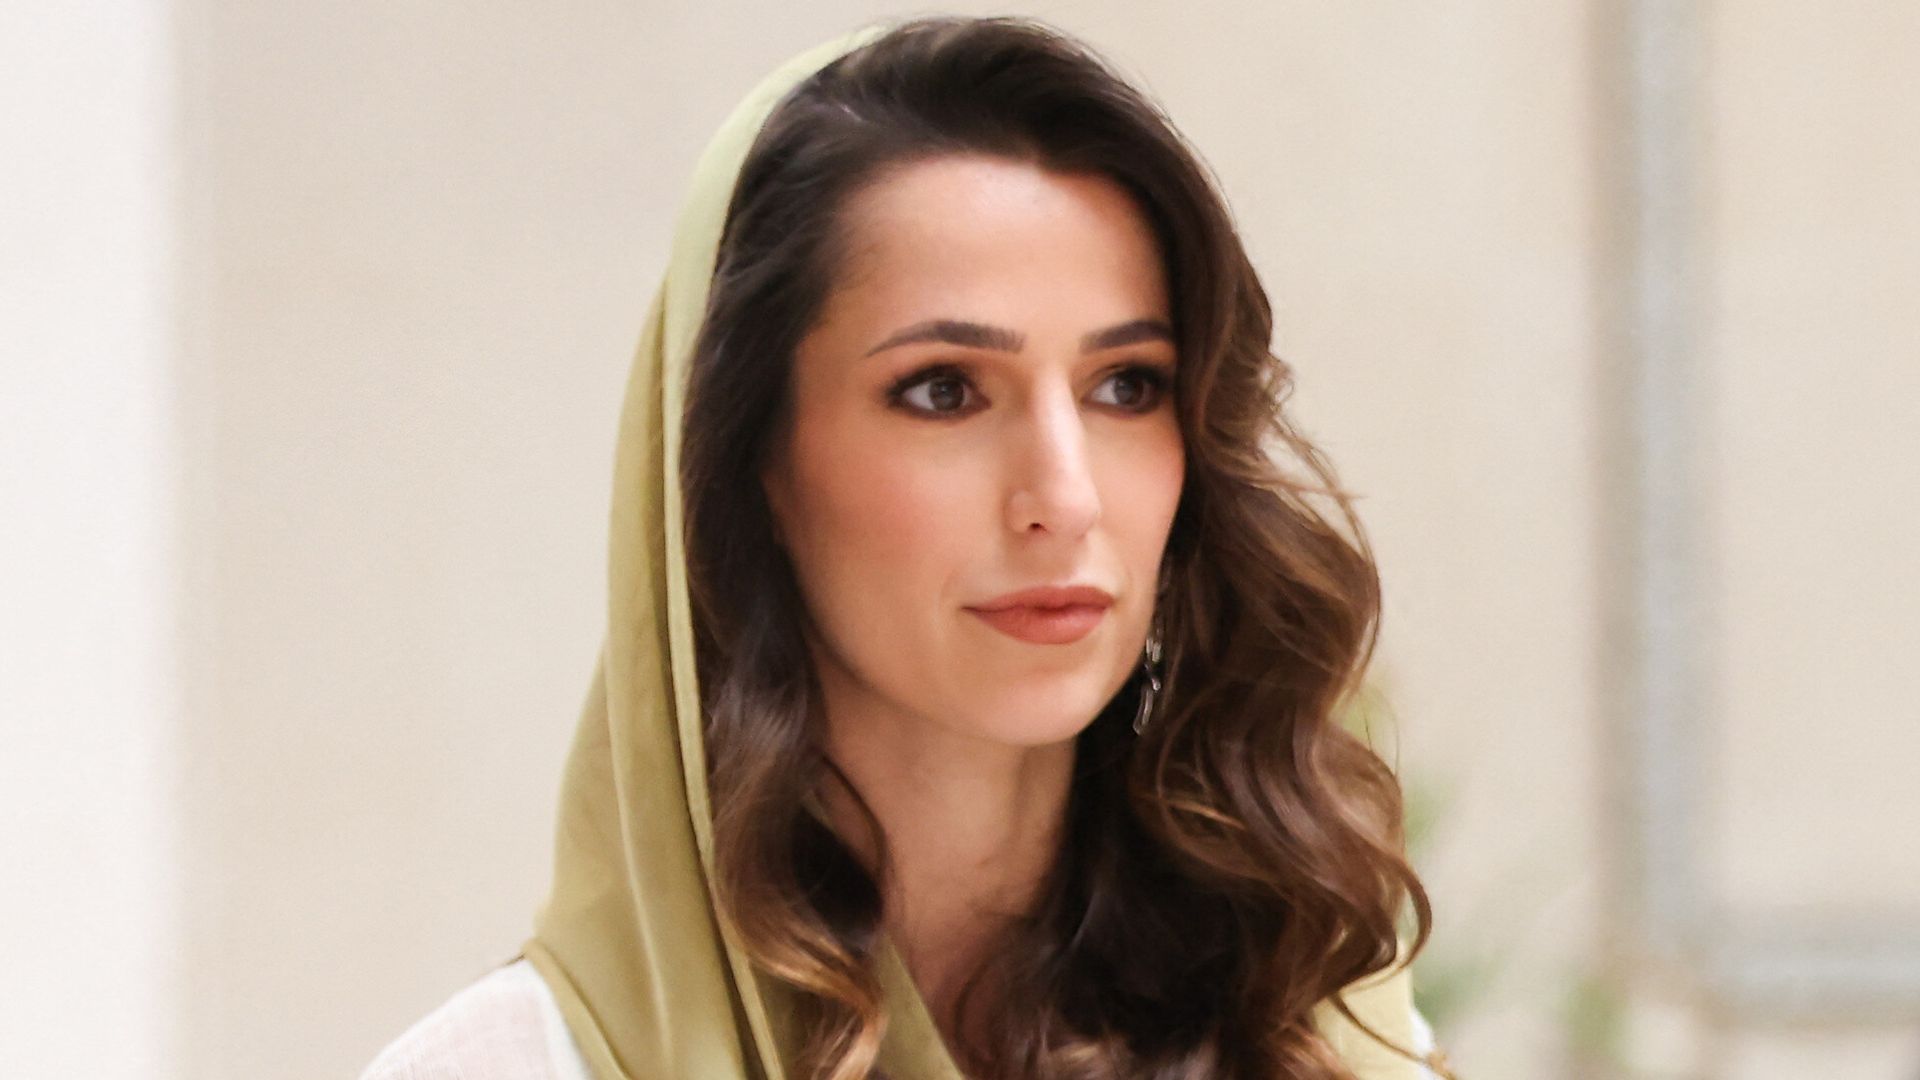 Princess Rajwa of Jordan